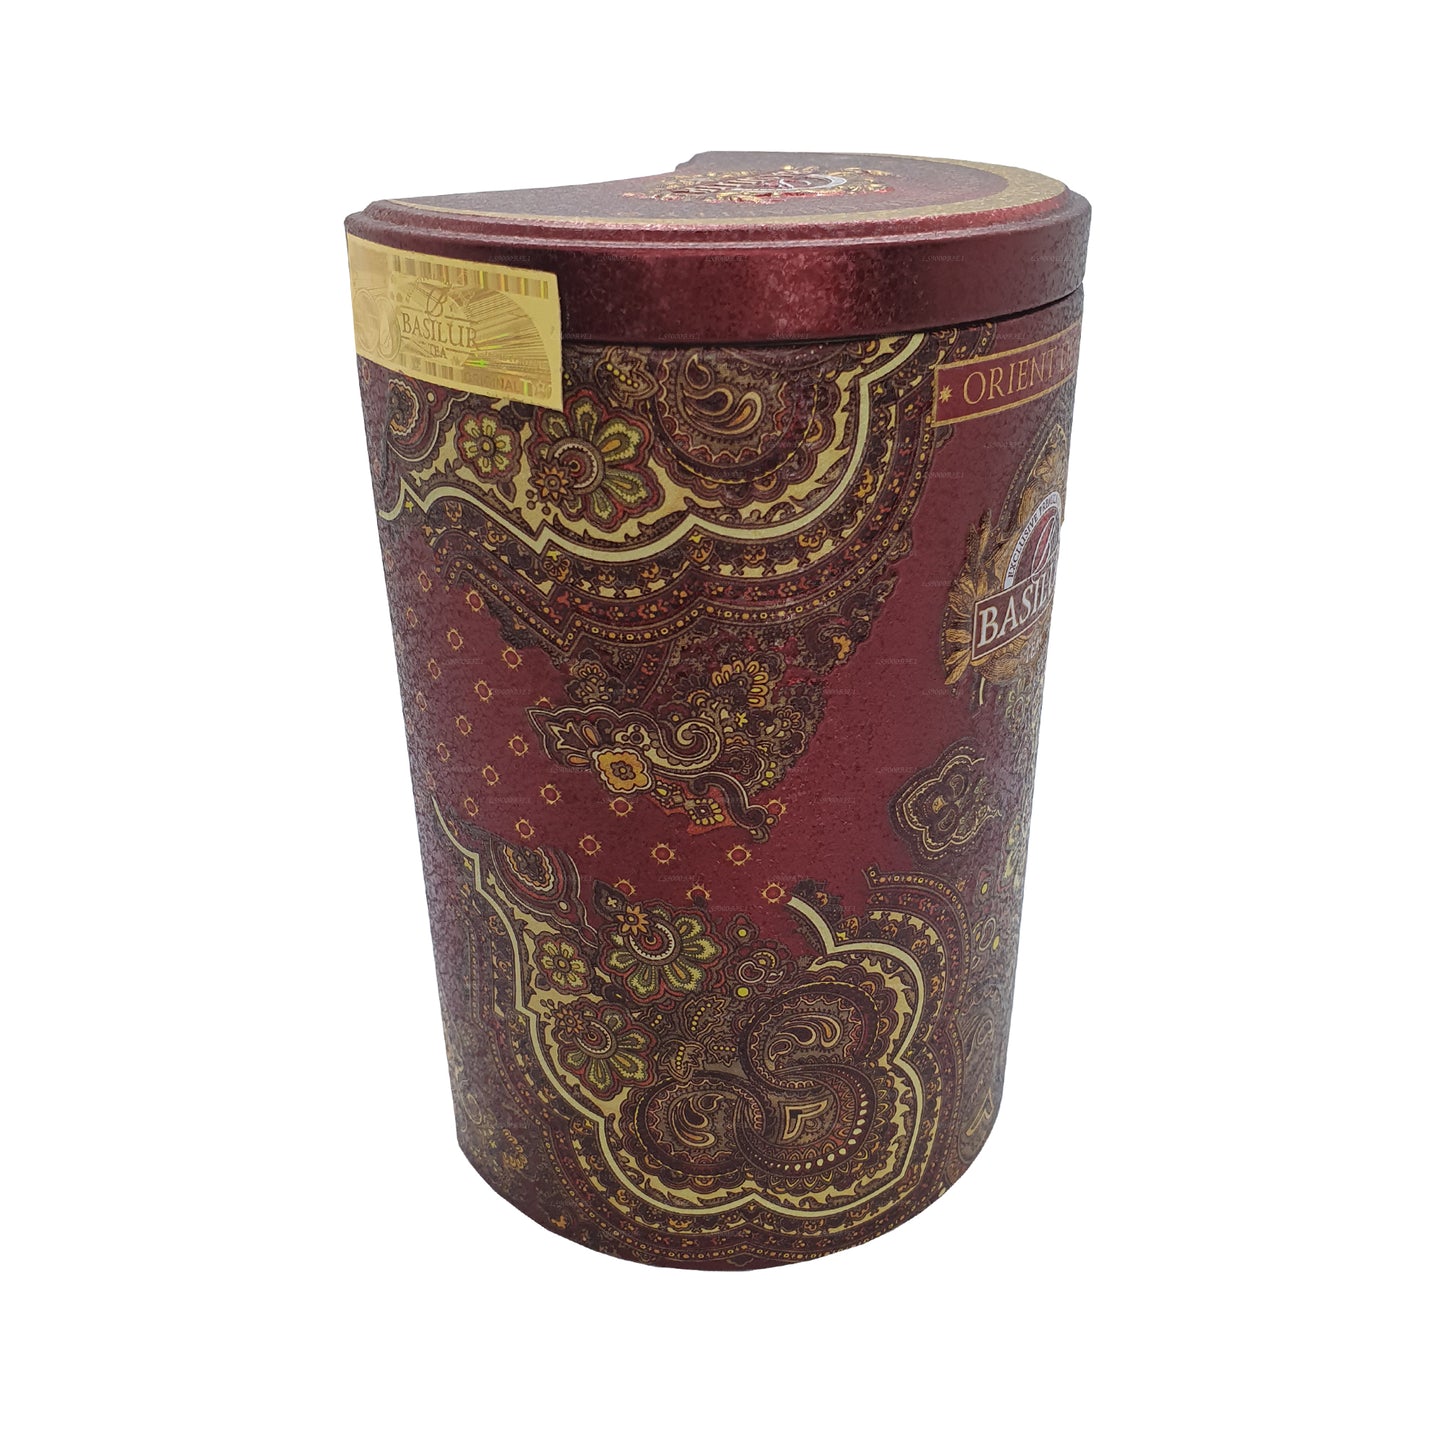 Basilur Oriental „Orient Delight“ (100g) Caddy